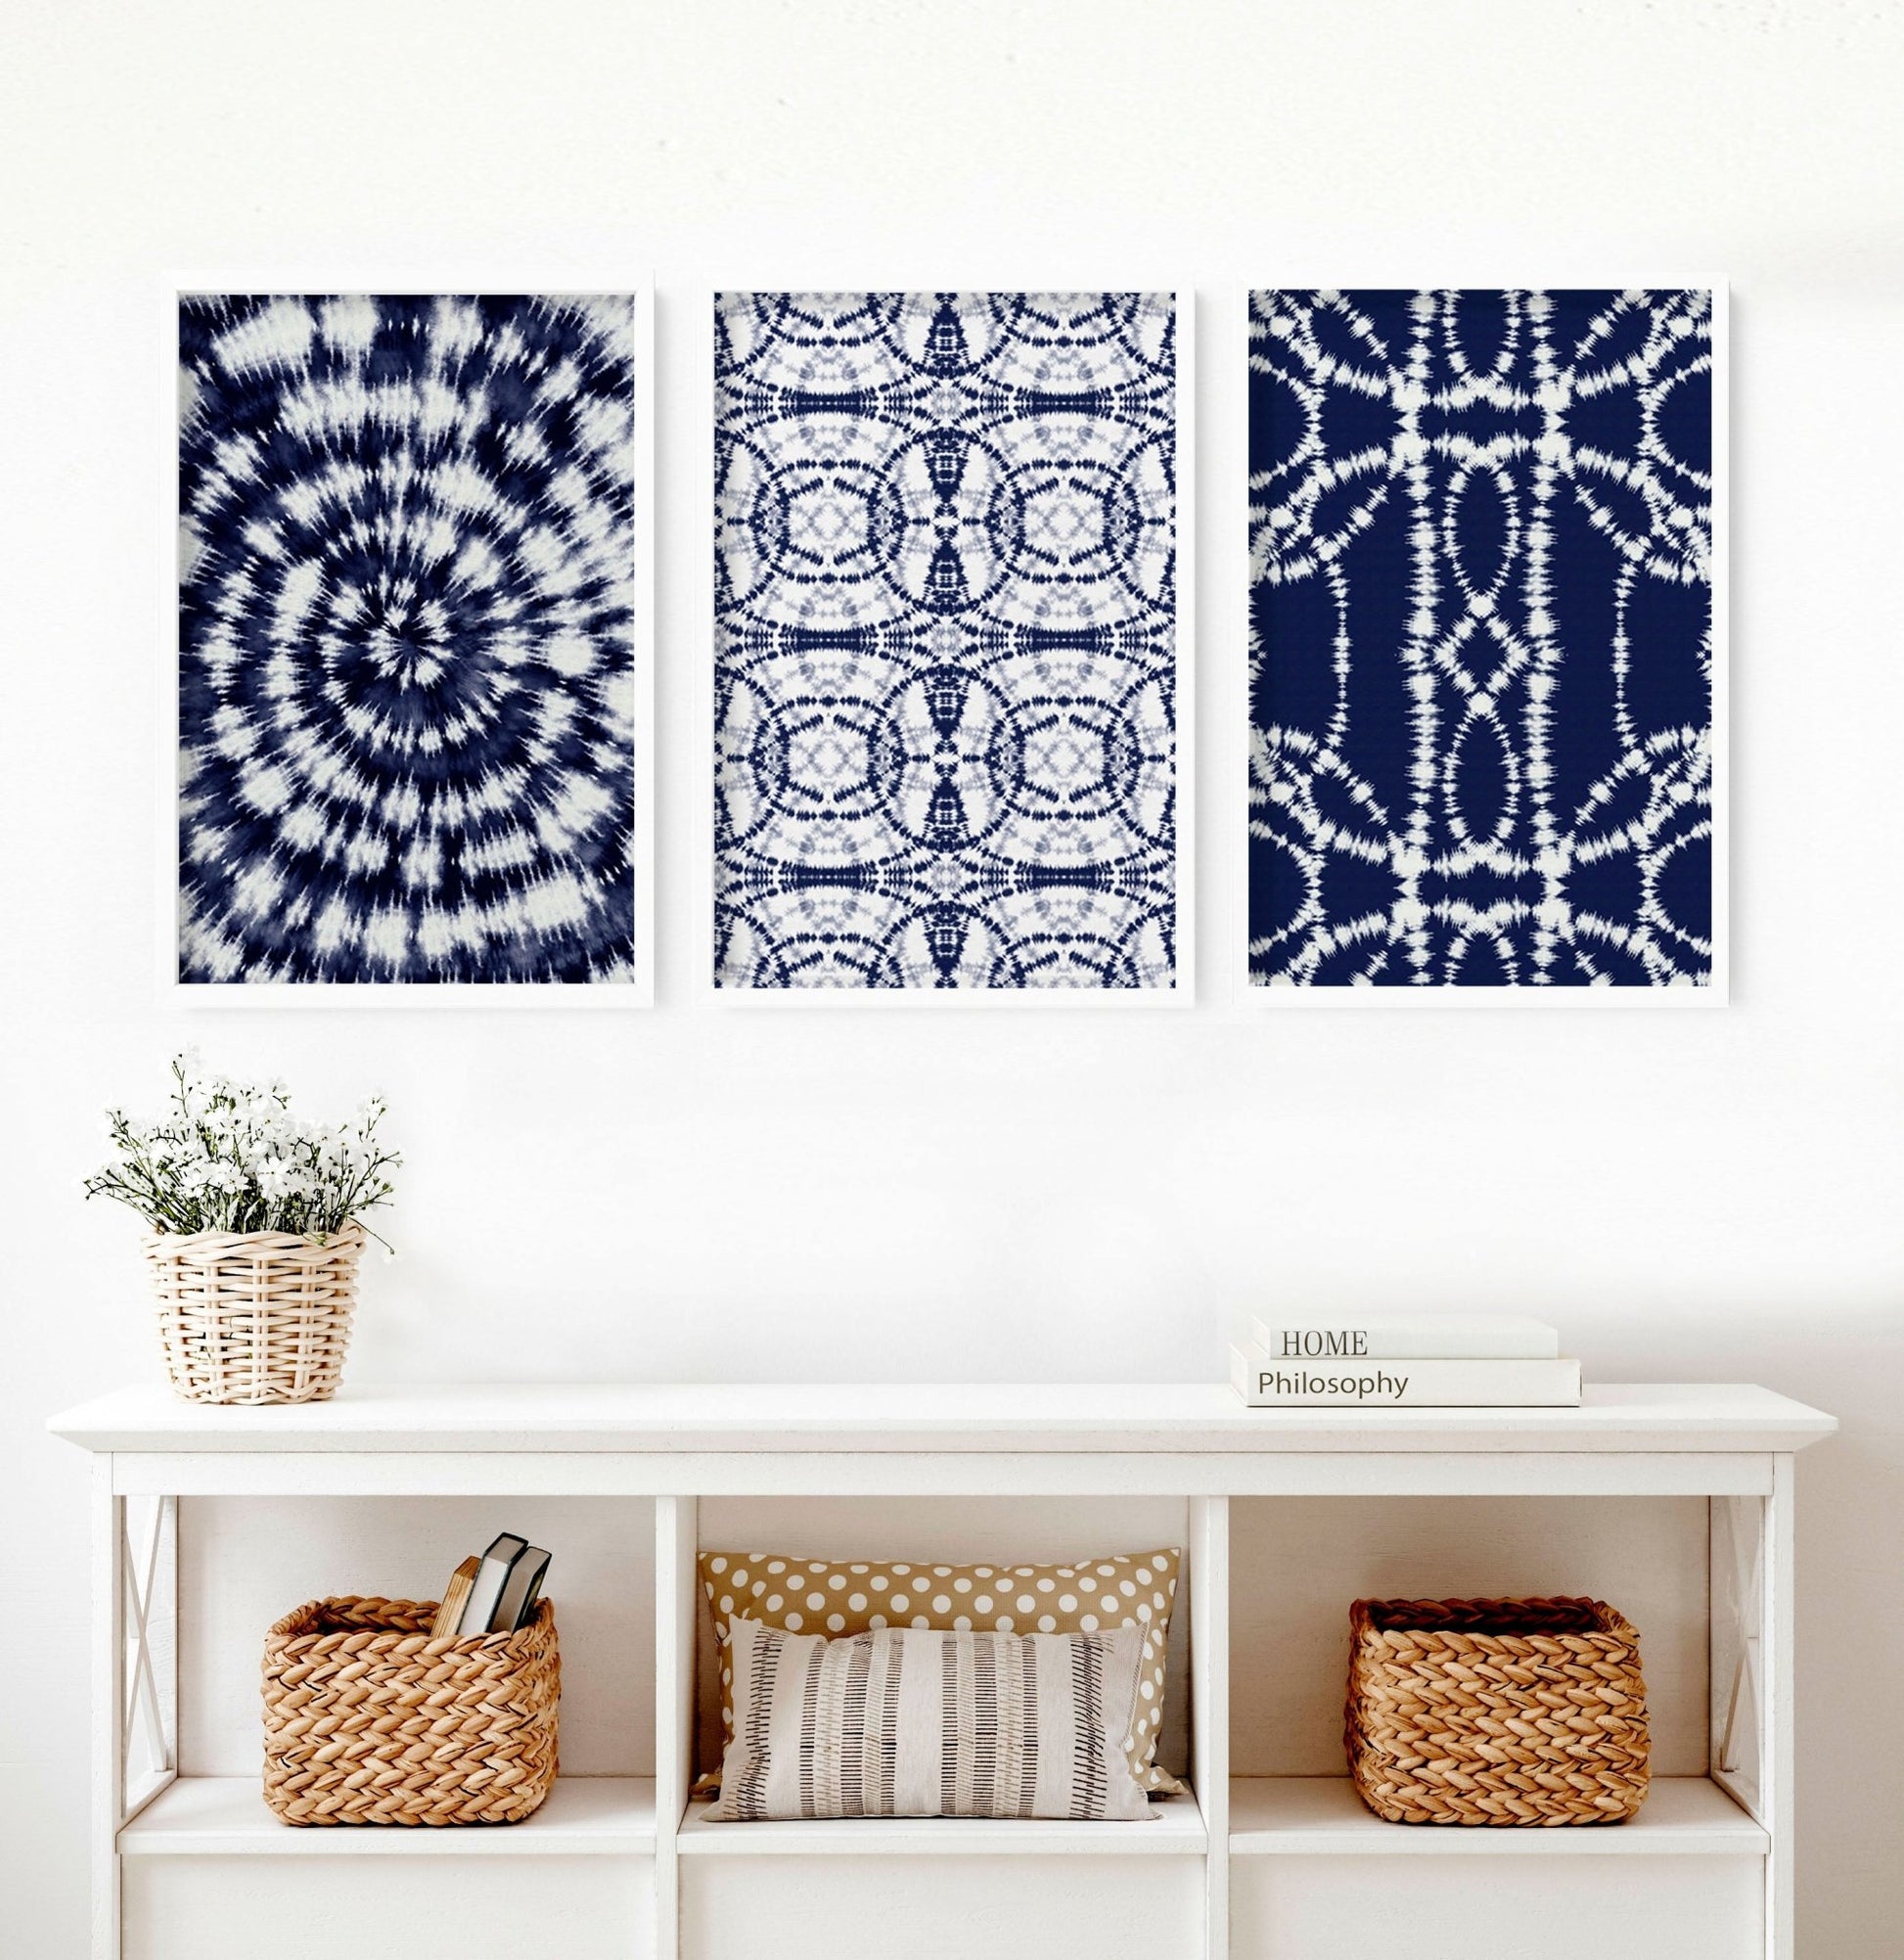 Indigo Shibori tie dye | Set of 3 wall art prints - About Wall Art